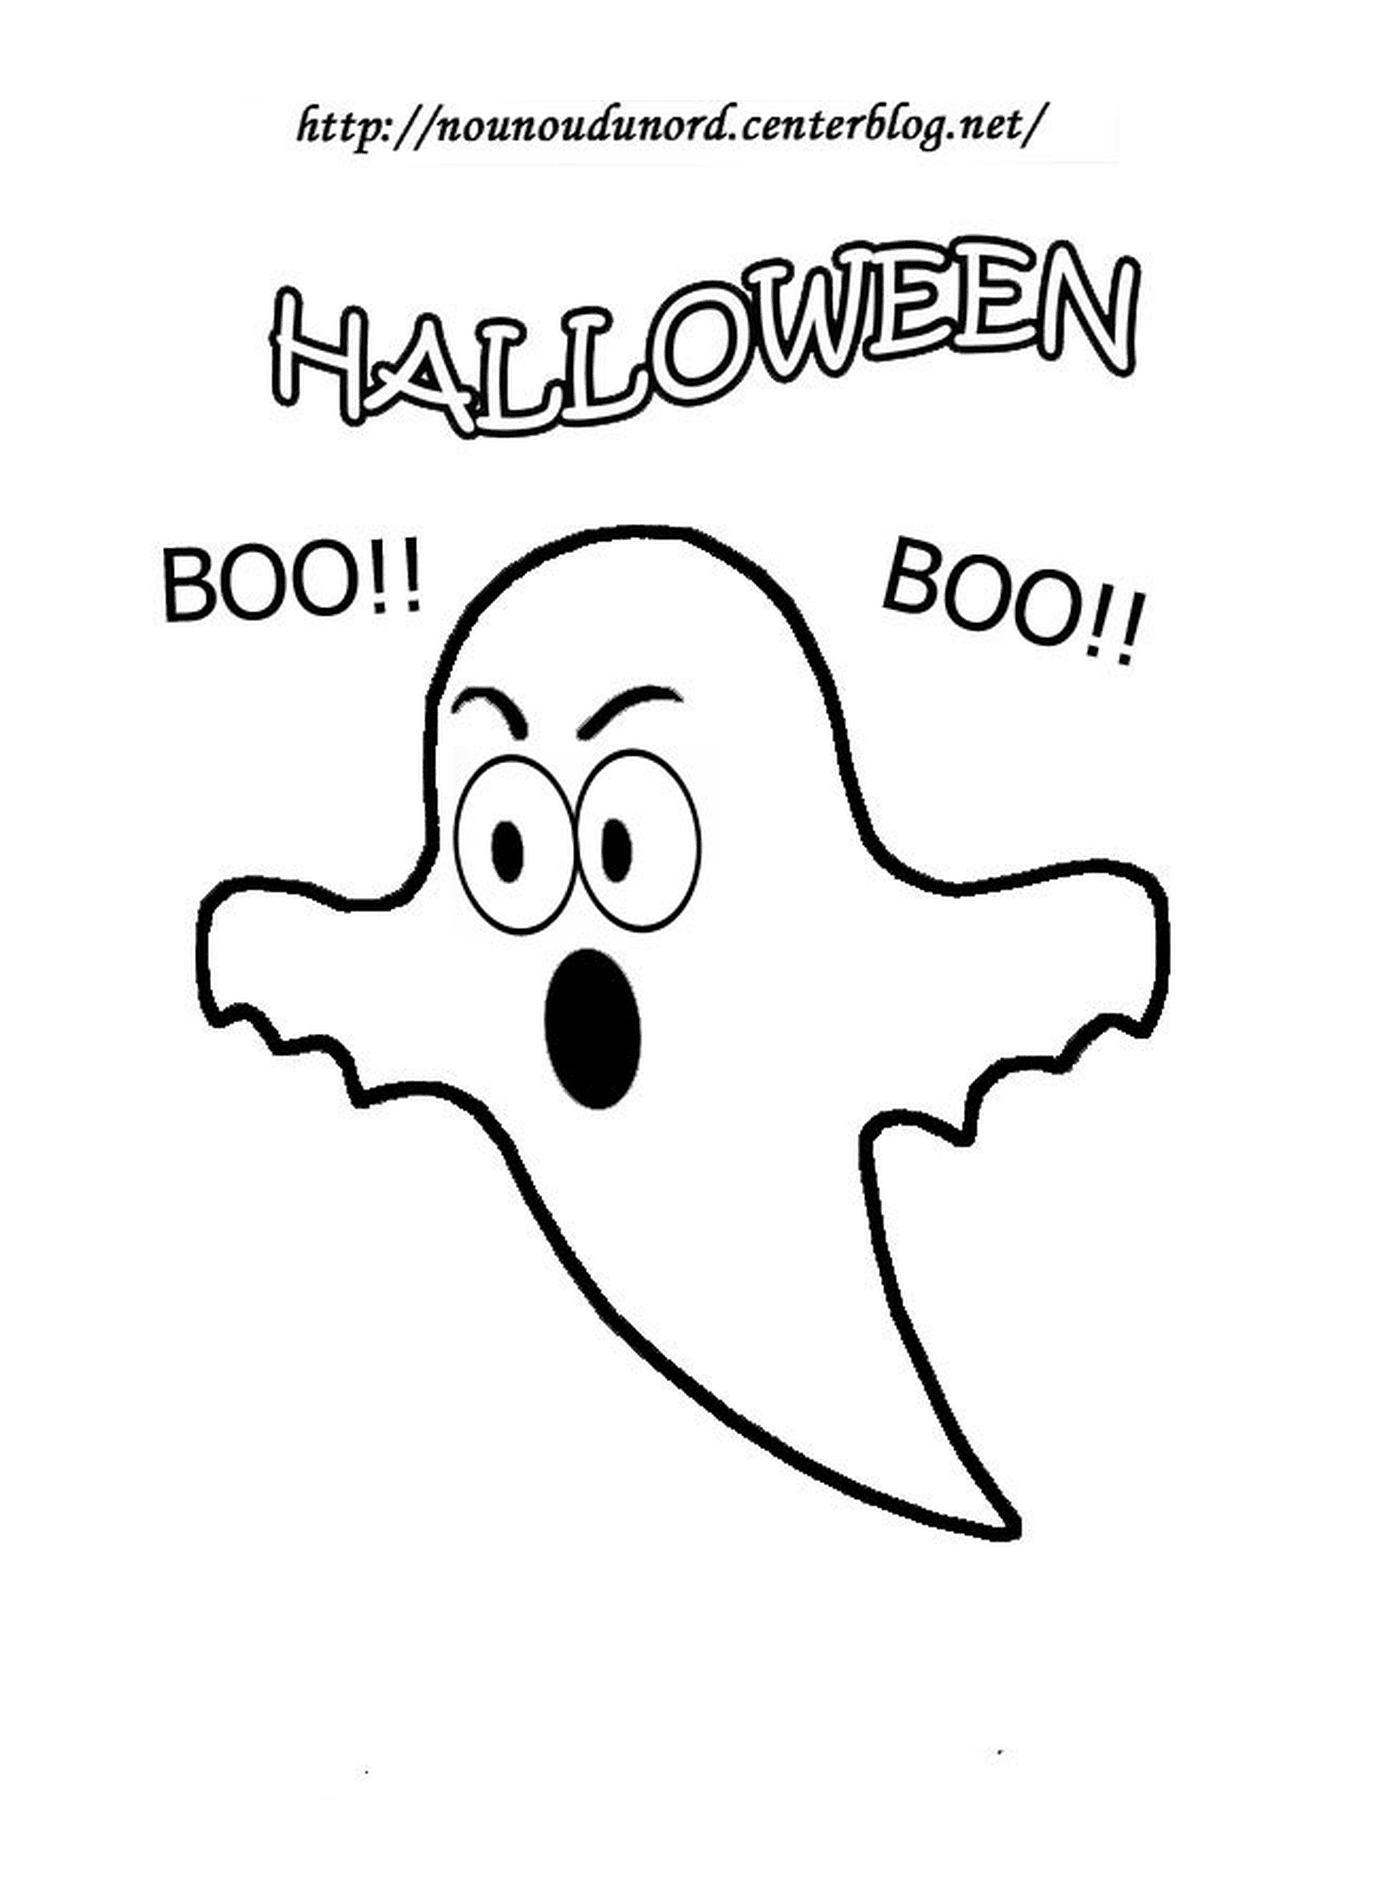  Halloween, fantasma boo 